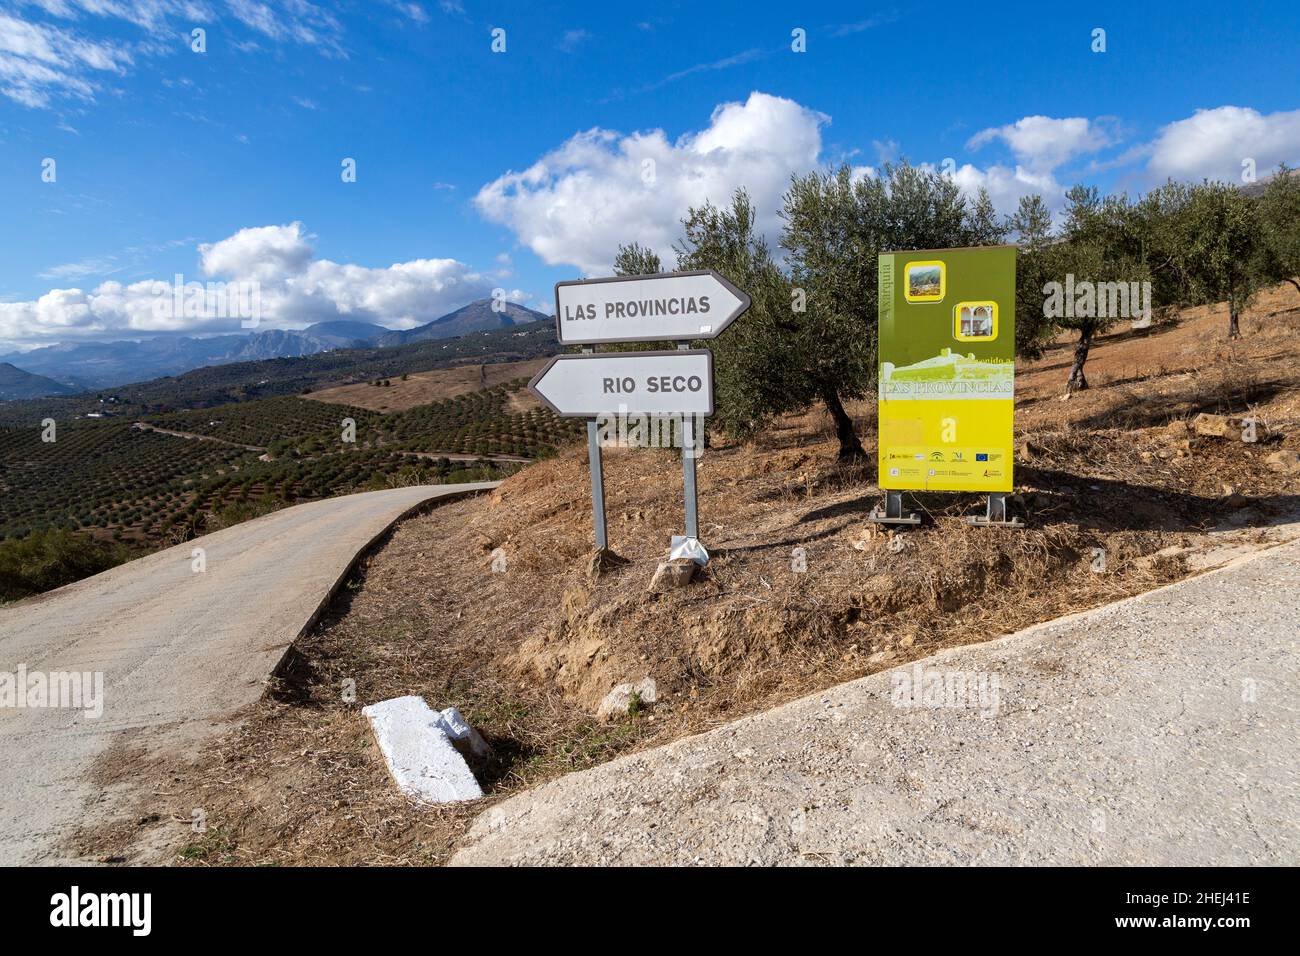 Road signs to Rio Seco and Las Provincias in olive trees near Zalia, Alcaucin, La Axarquía, Andalusia, Spain Stock Photo